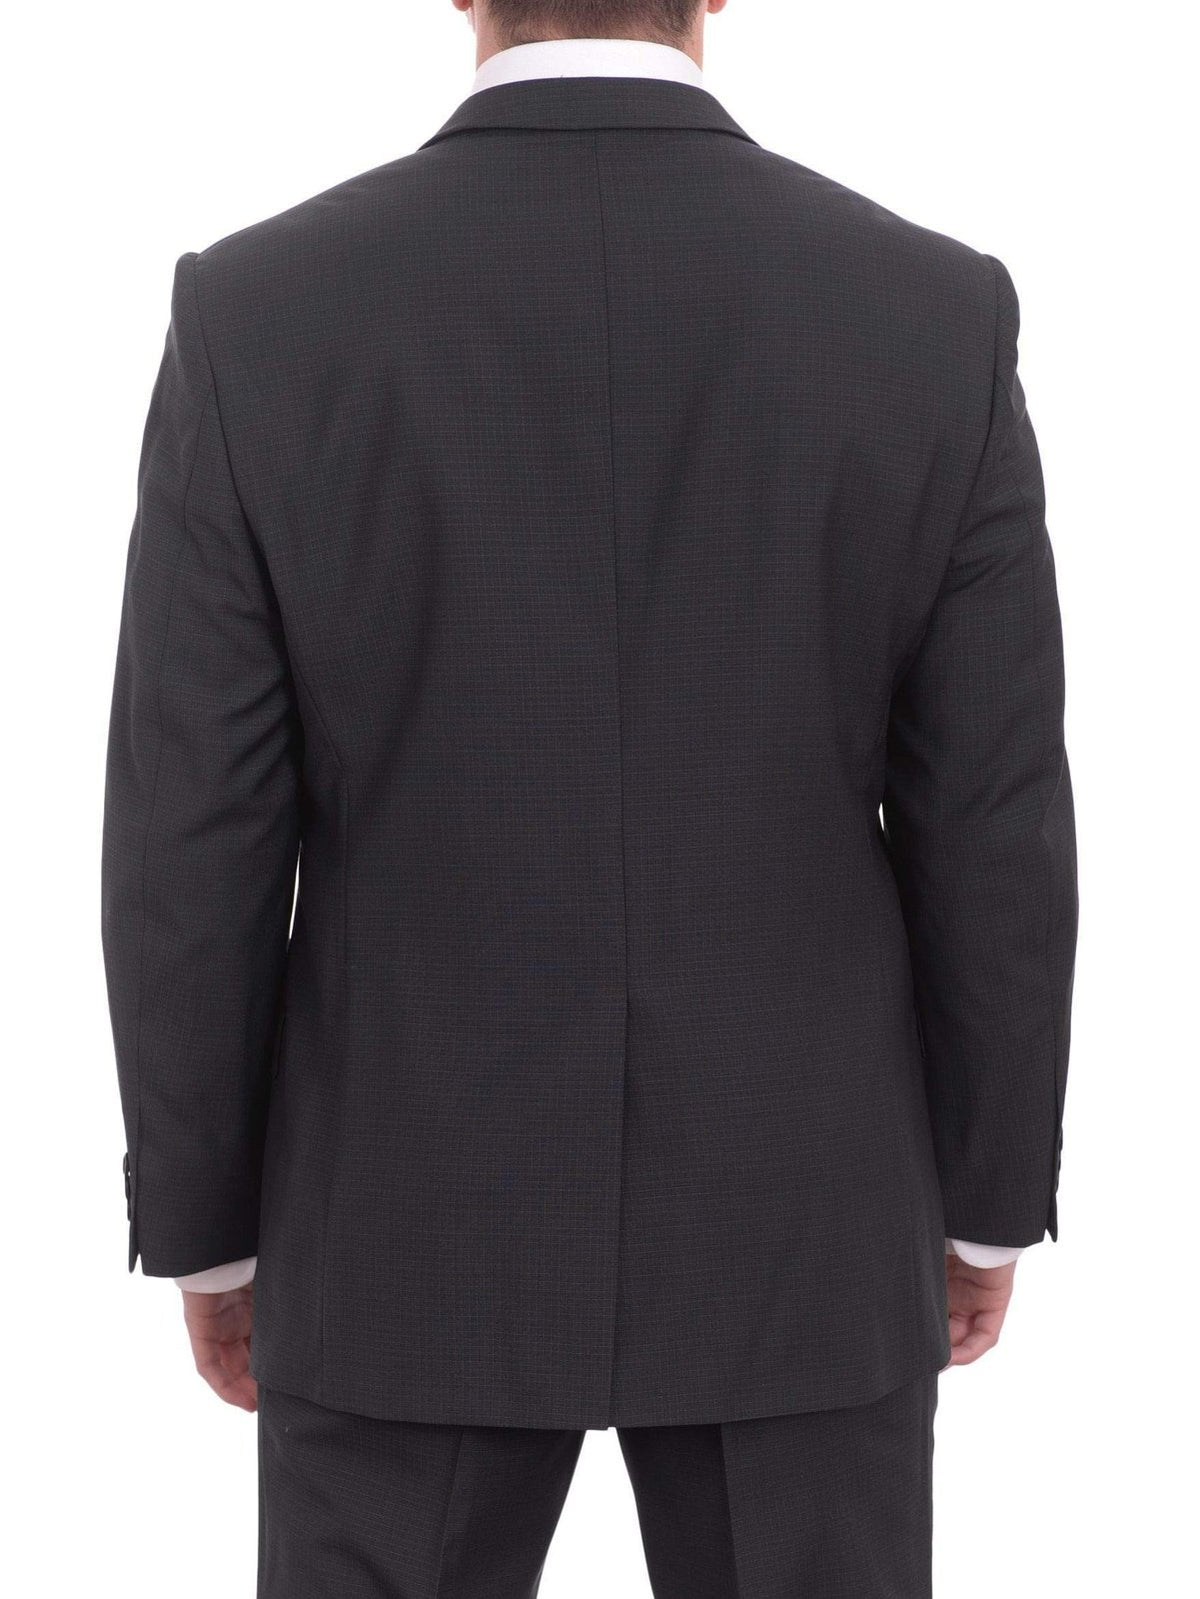 West End Sale Suits Mens West End Slim Fit Navy Blue Check 2 Button Wool Suit Jacket &amp; Hemmed Pants